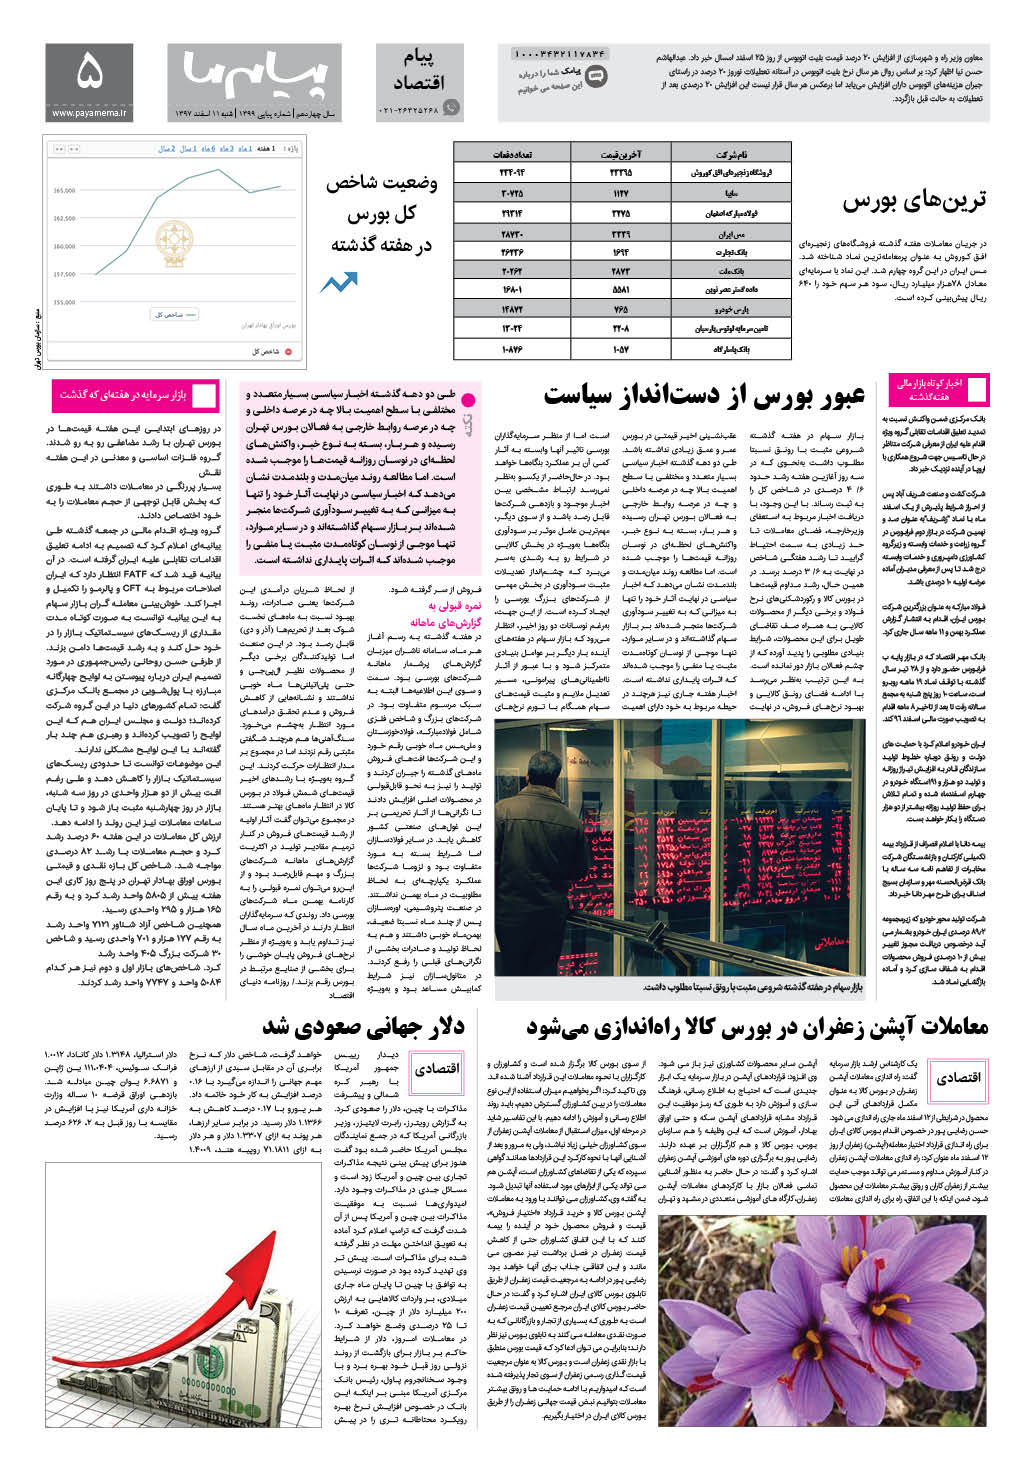 صفحه پیام اقتصادی شماره 1399 روزنامه پیام ما